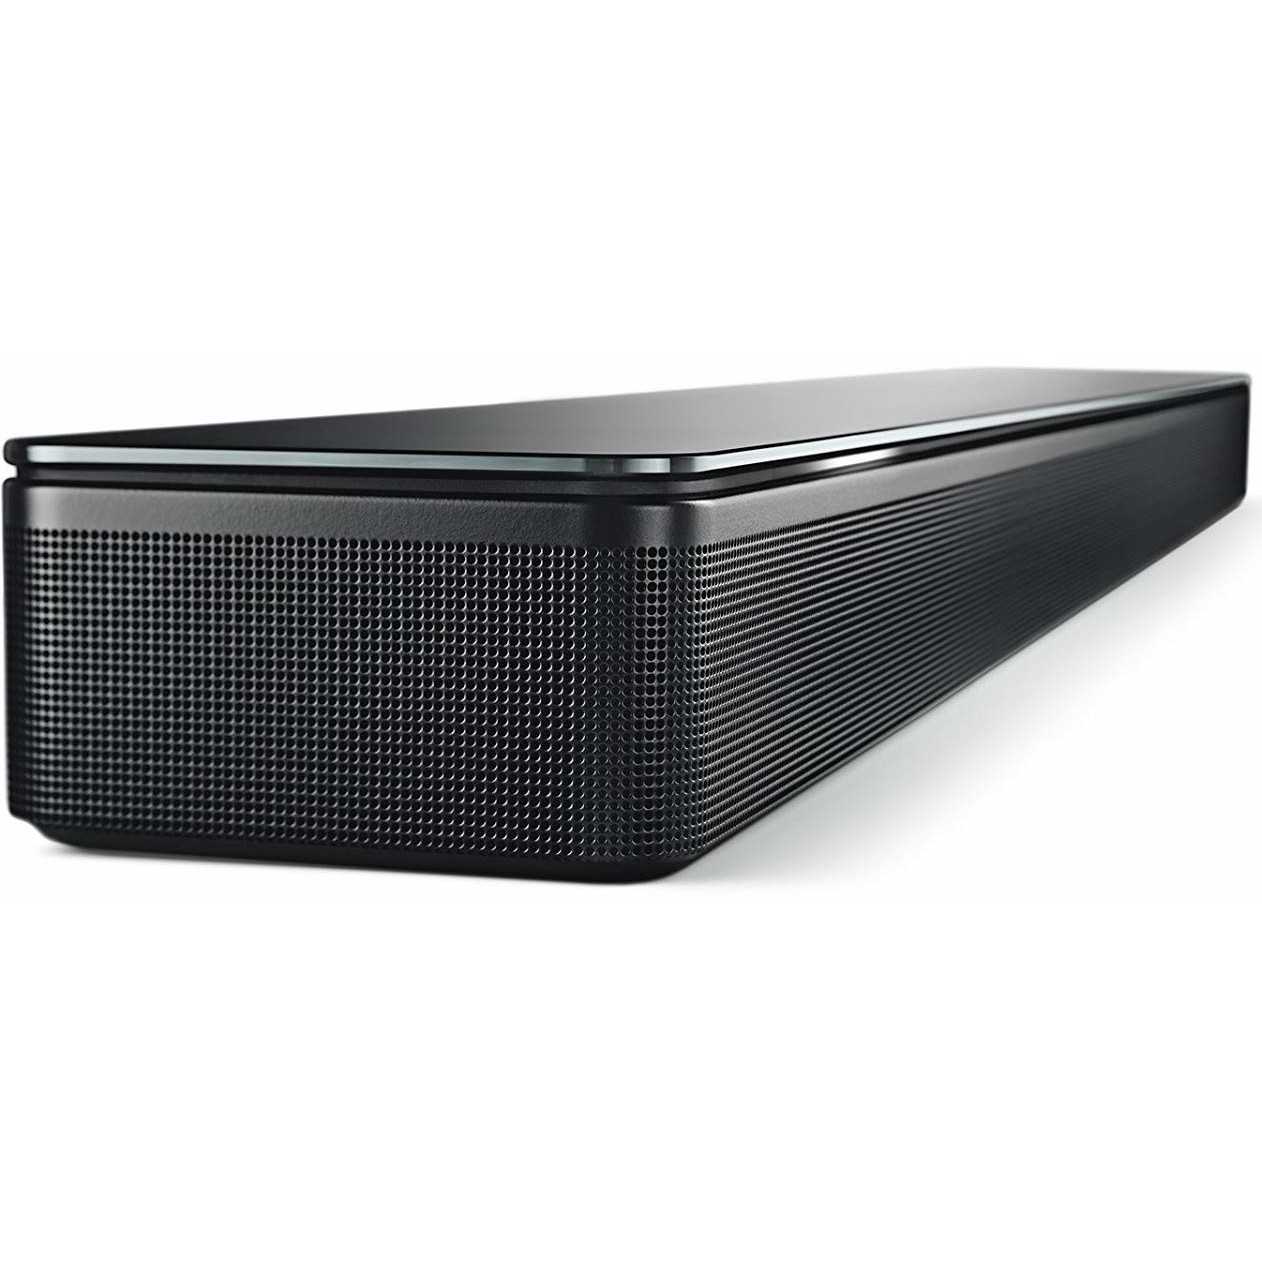 Bose smart soundbar 300 review - rtings.com